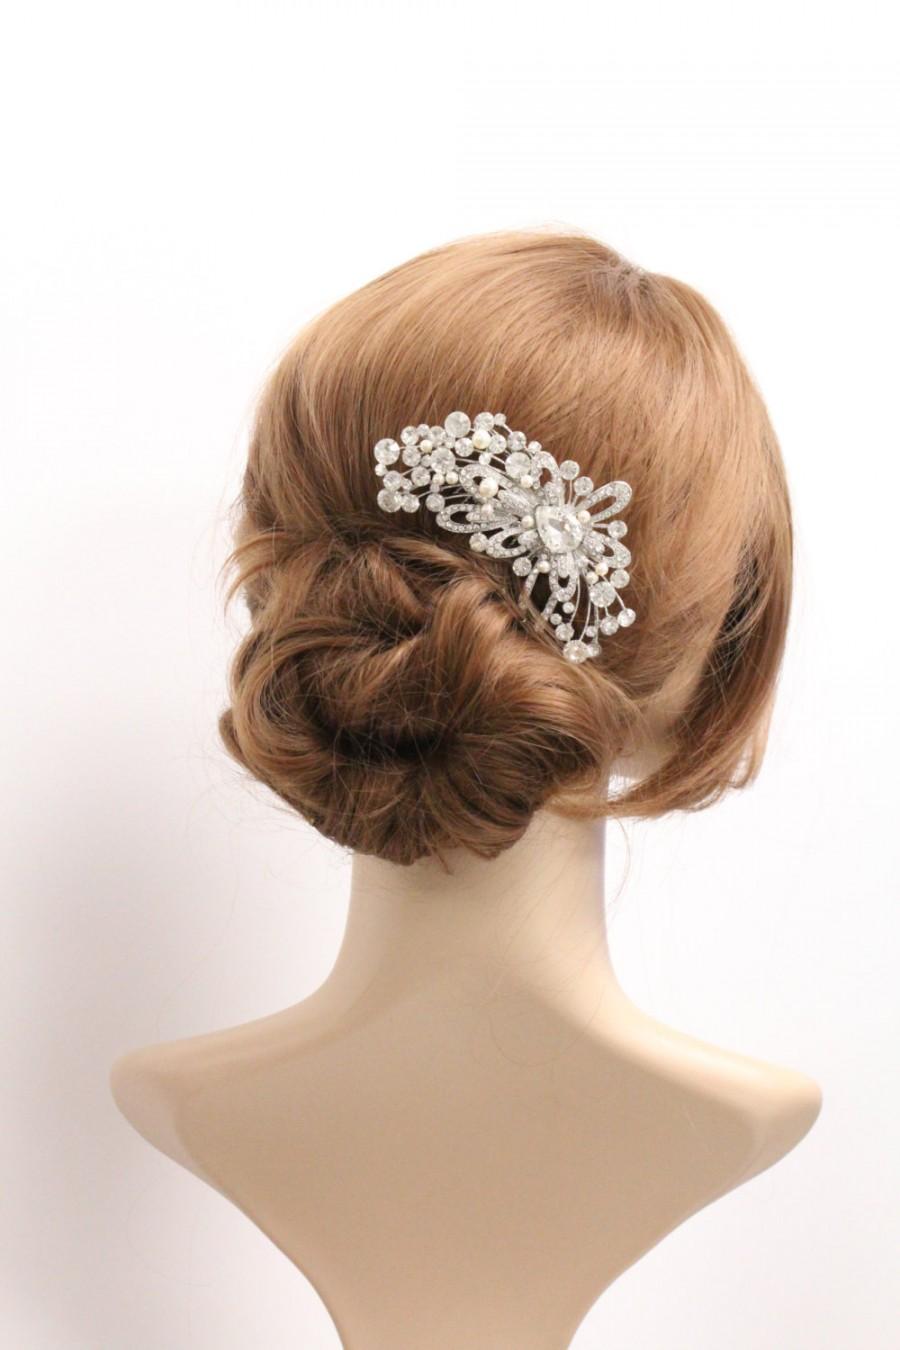 Mariage - Bridal hair comb Wedding hair accessories Bridal hair jewelry Wedding headpiece Bridal jewelry Wedding hair comb Bridal headpiece 1920's